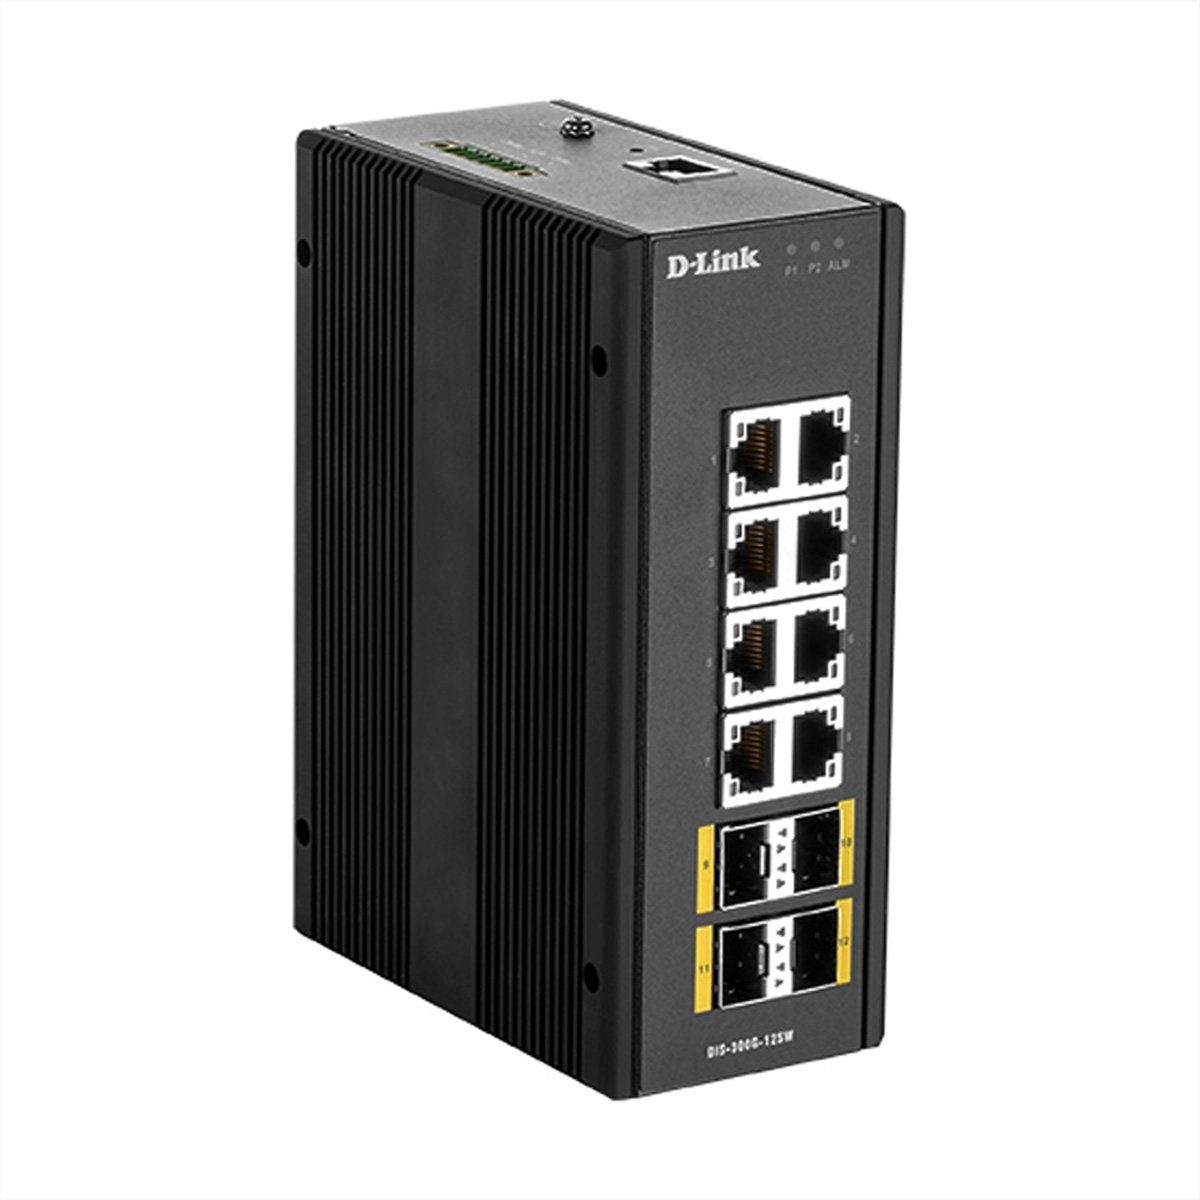 D-Link DIS-300G-12SW 12-Port SwitchLayer2 Managed Gigabit Industrial Netzwerk-Switch